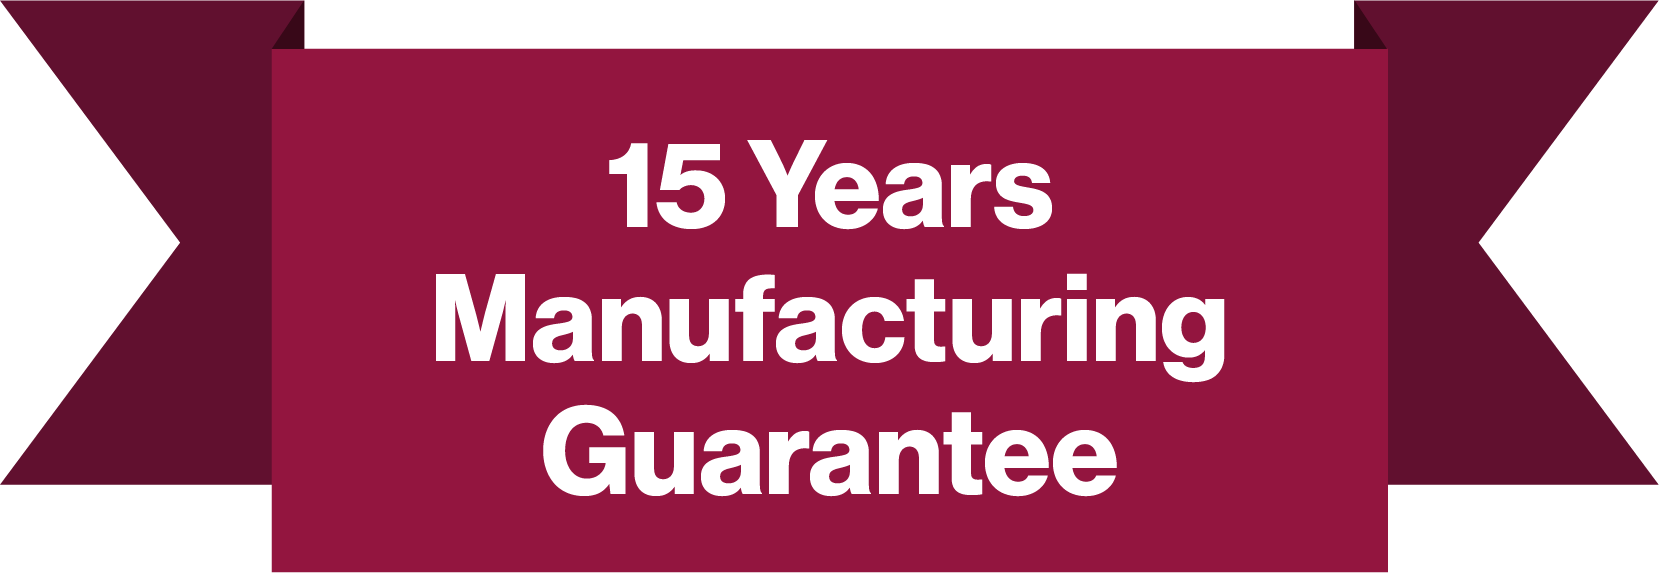 15 Years Manufacturing Guarantee